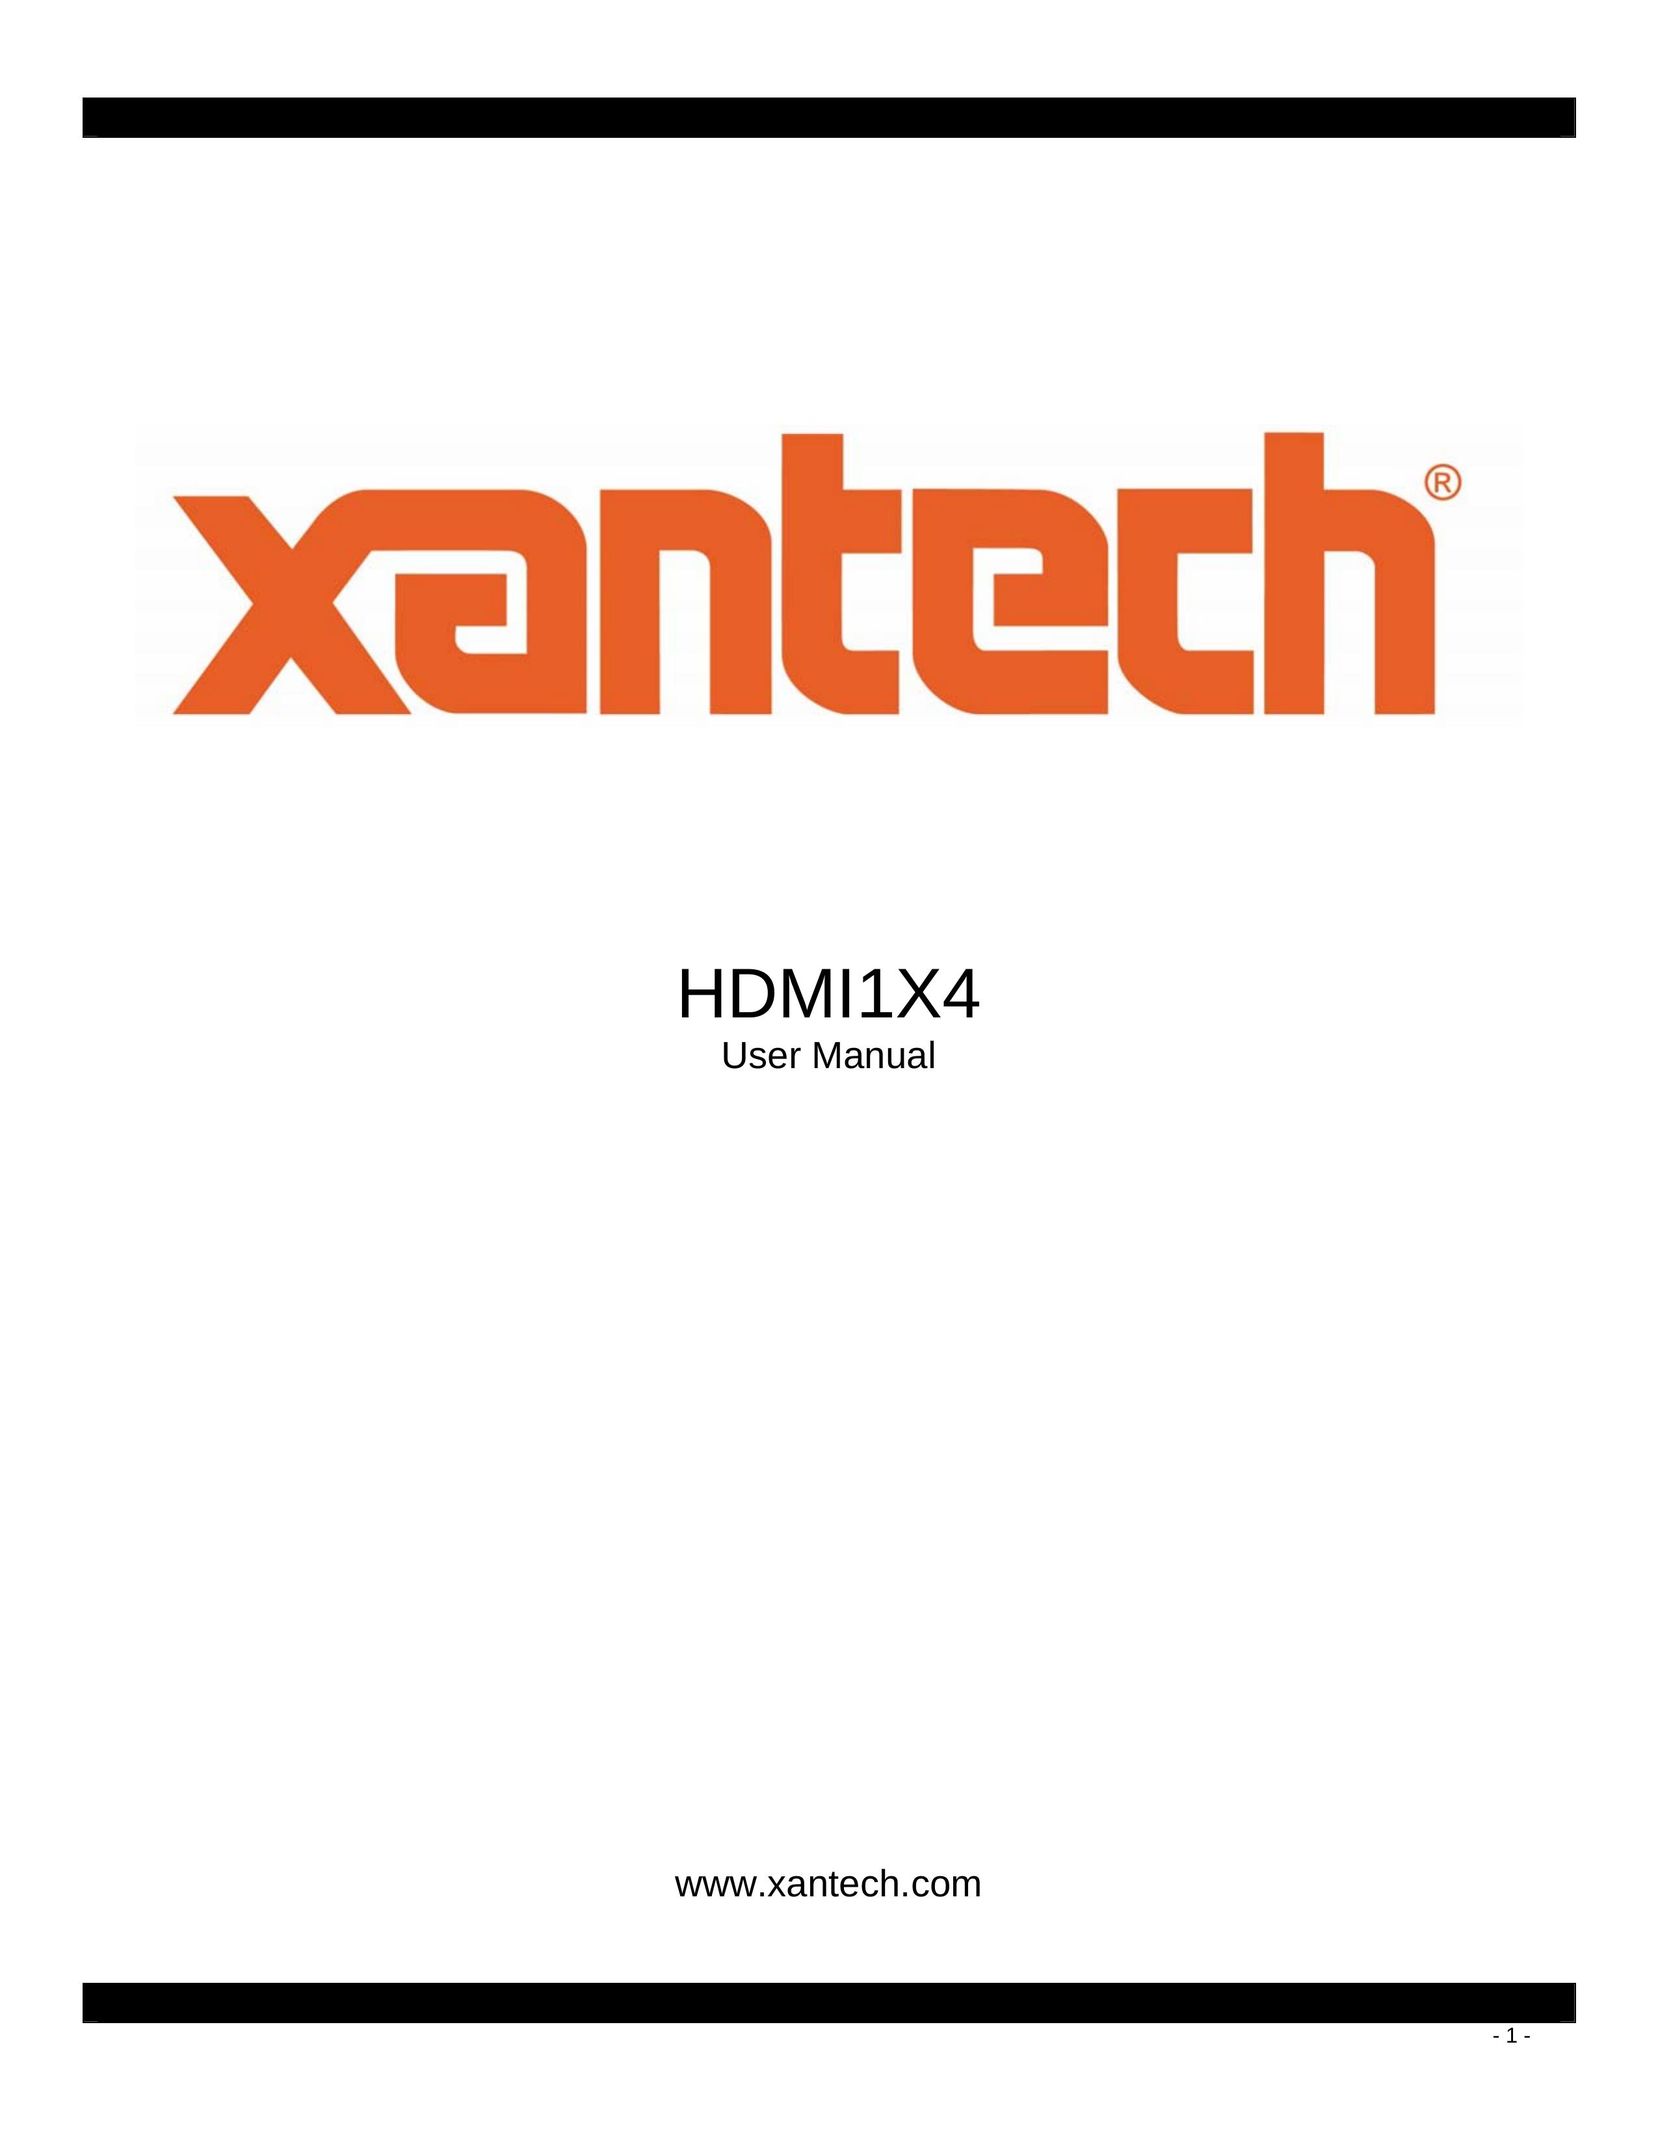 Xantech HDMI1X4 Network Card User Manual